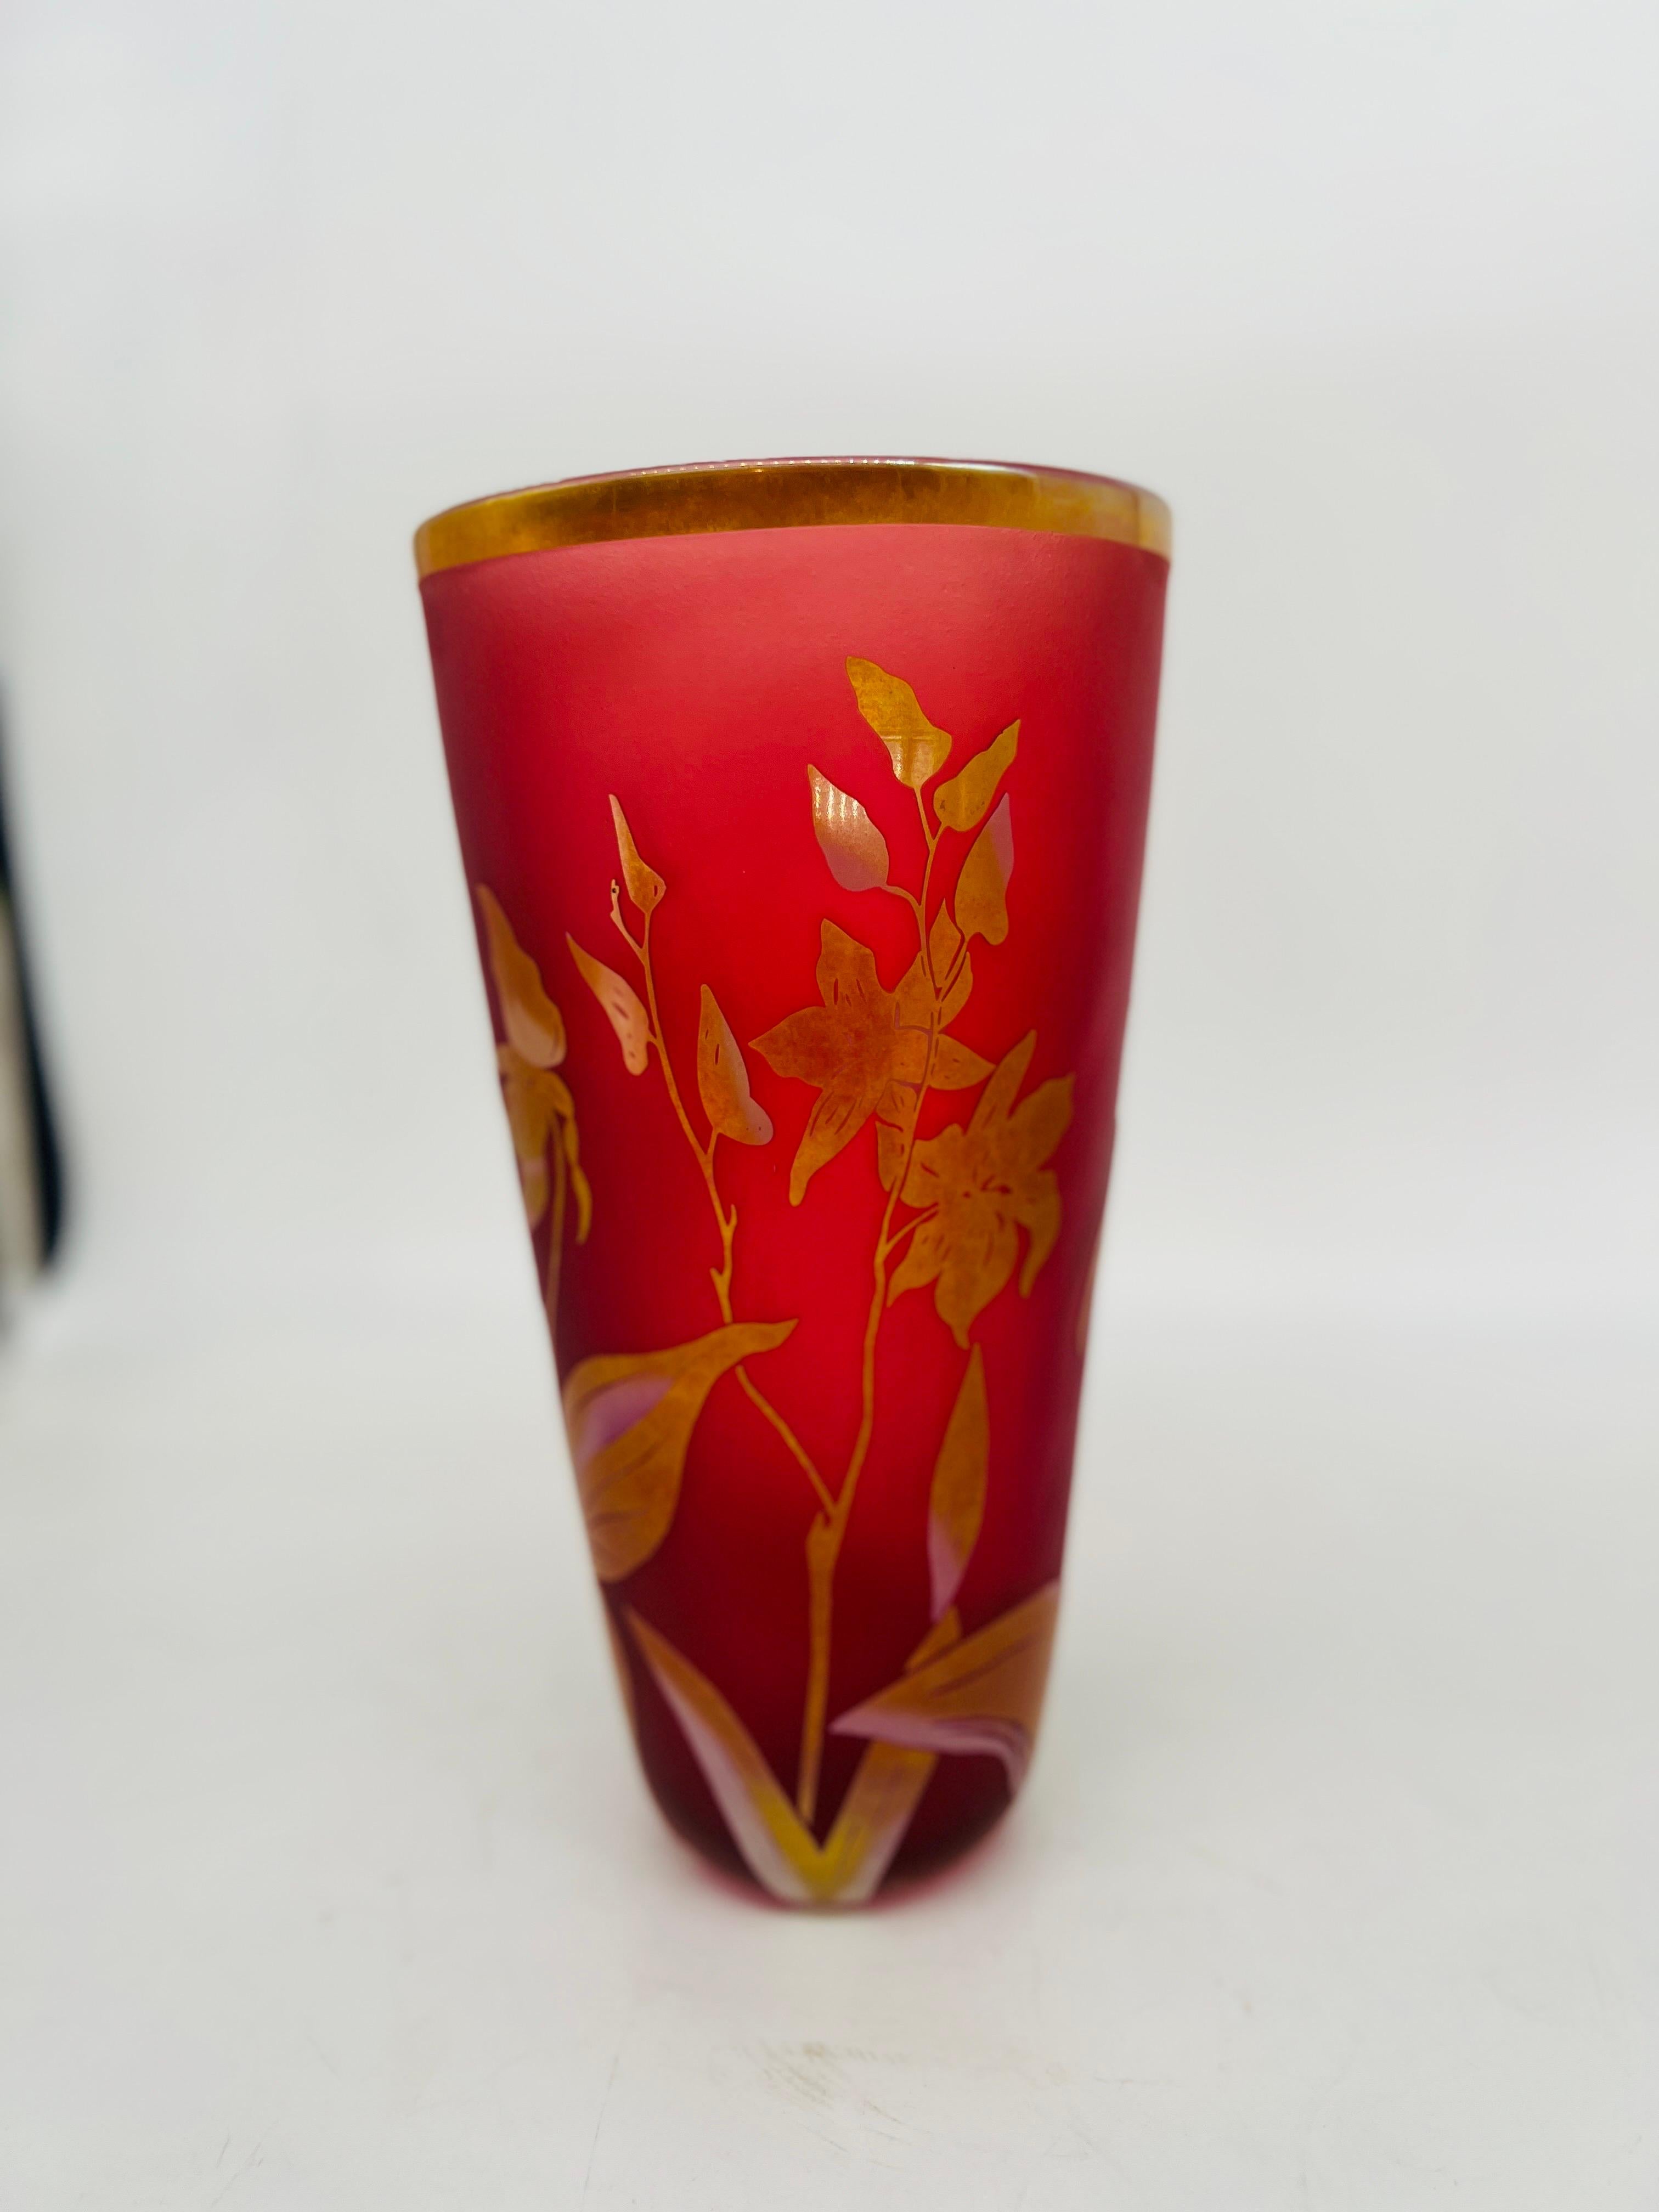 Die Steven Correia Limited Edition Studio Art Glass Vase, entstanden um 2005, ist ein bemerkenswertes Sammlerstück. Diese Vase wurde vom renommierten Glaskünstler Steven Correia gefertigt und zeigt seine meisterhafte Beherrschung der Kunstform und